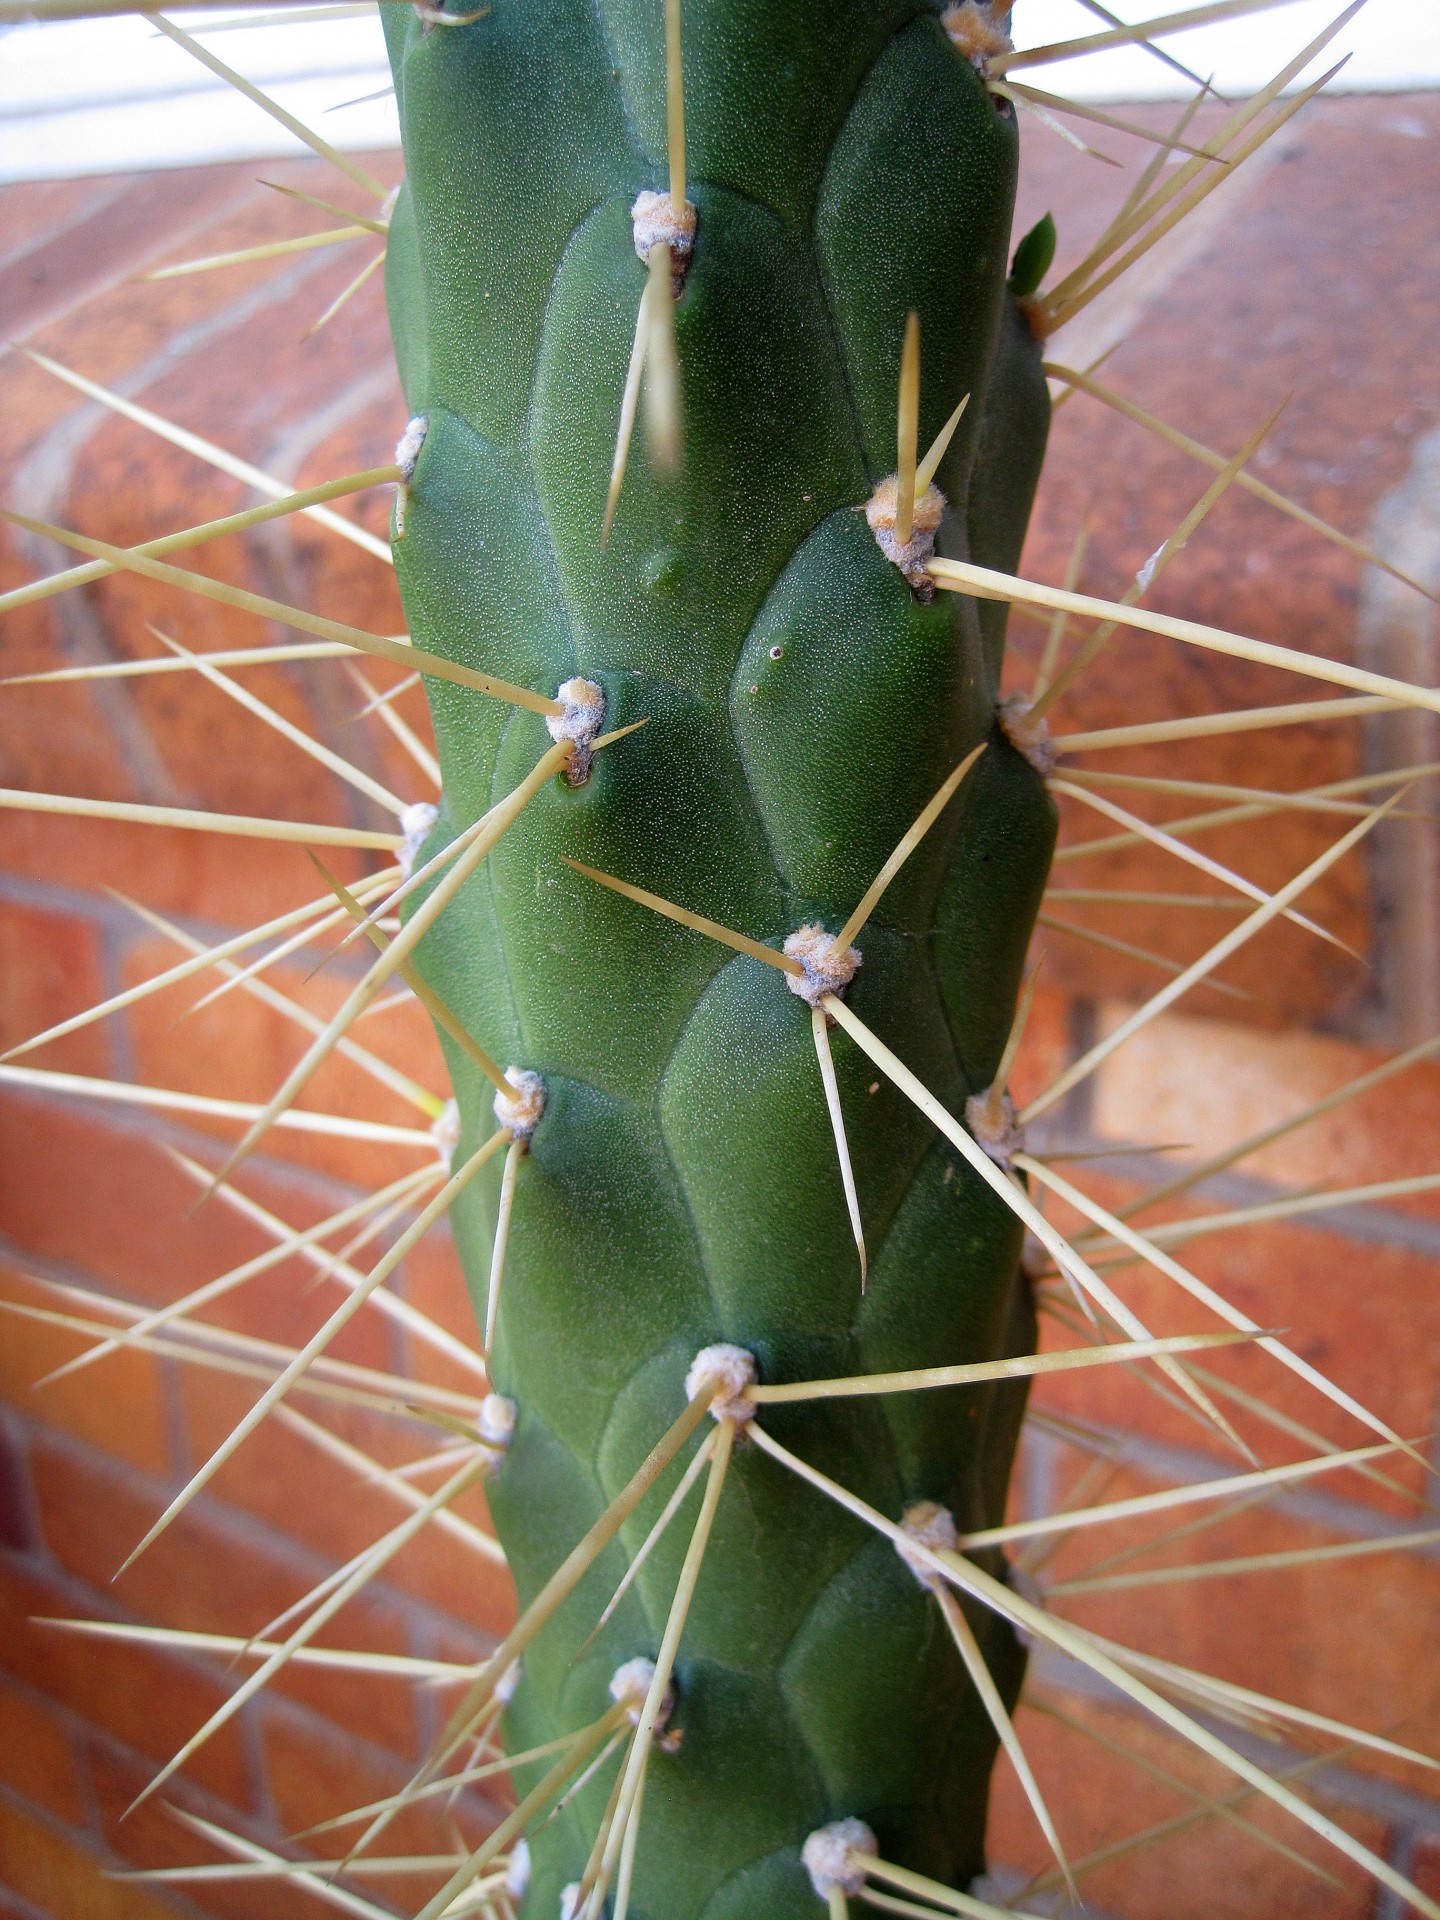 cactus thorns close